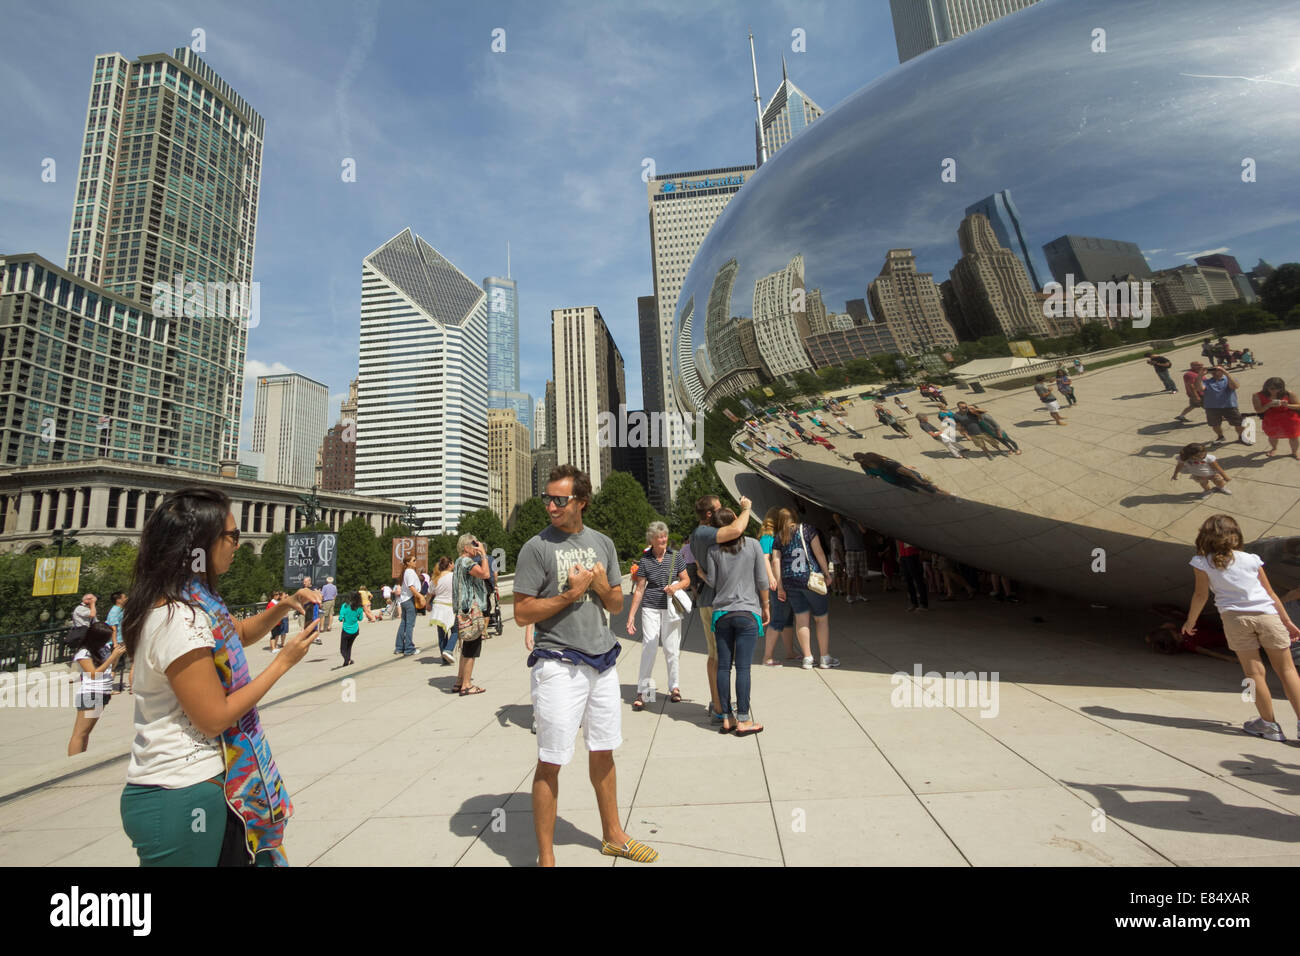 Touristen in Chicago Millennium Park und seine größte Attraktion - Cloud Gate. Stockfoto